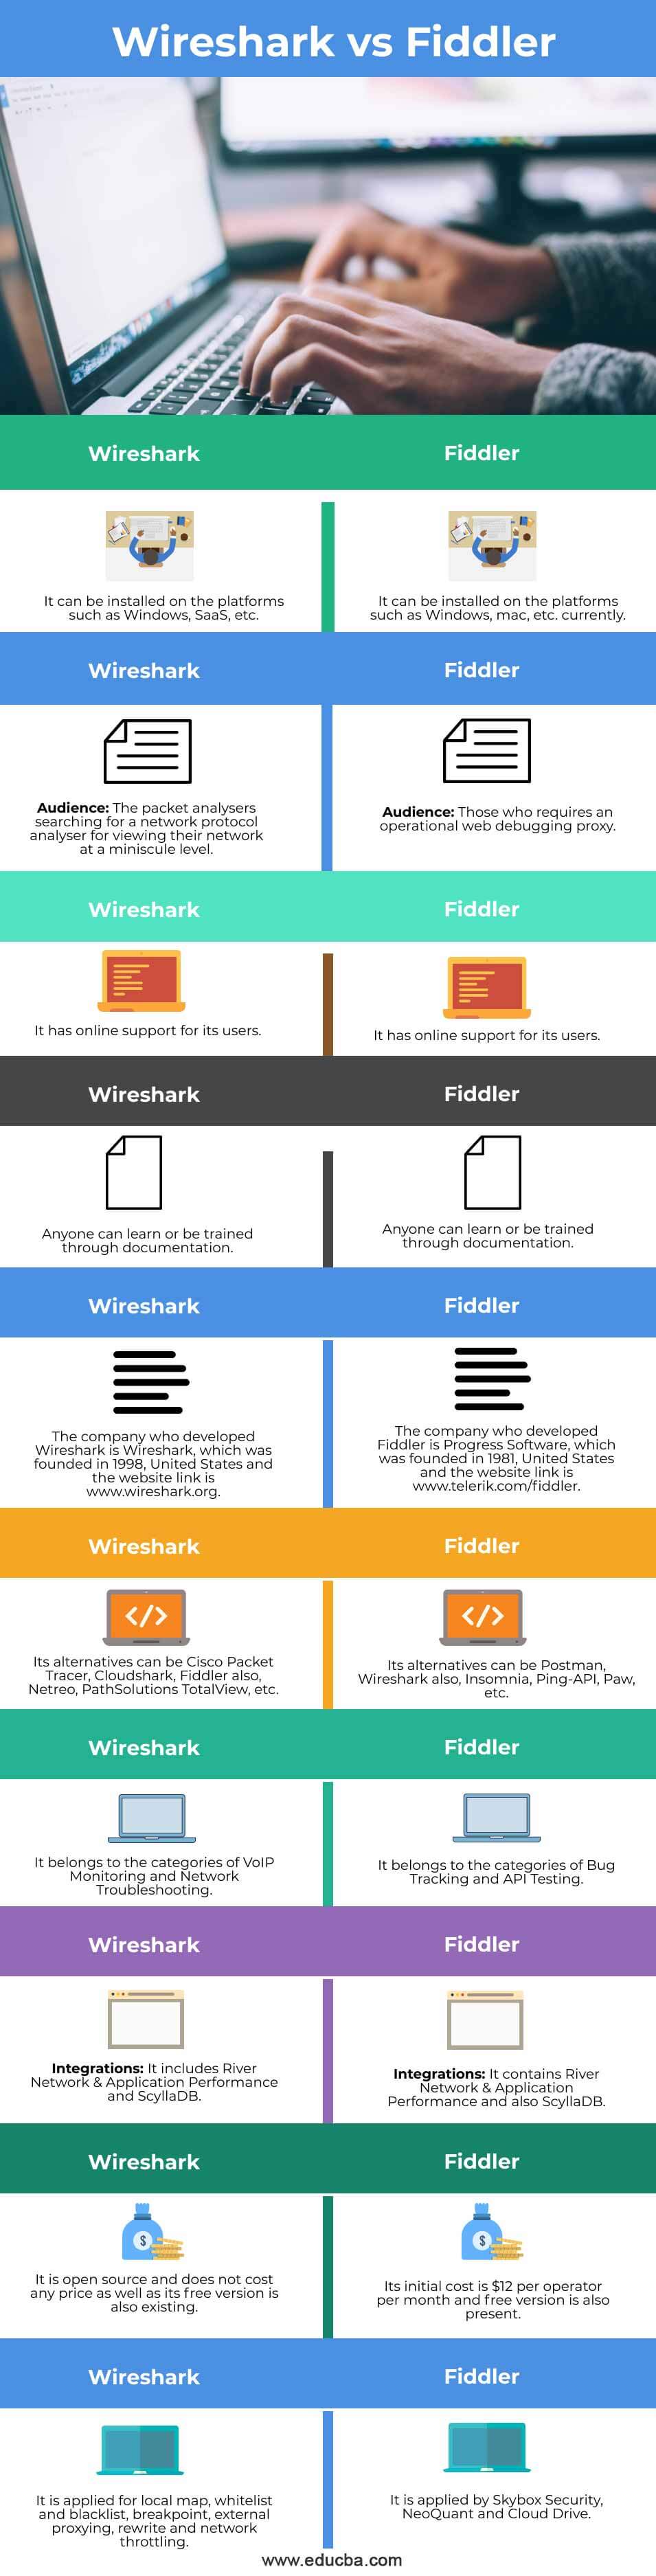 Wireshark-vs-Fiddler-info